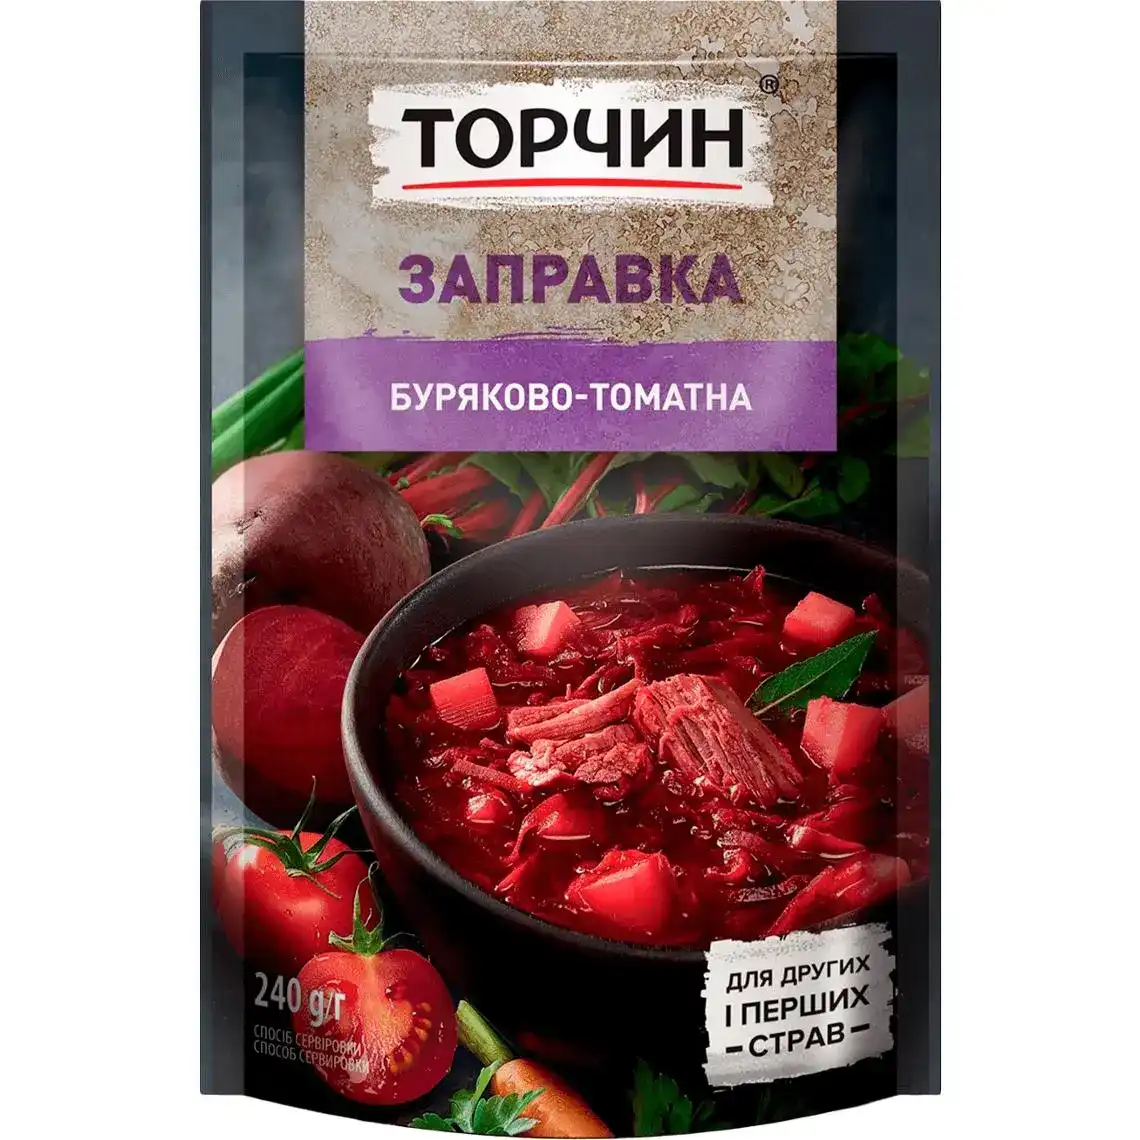 Заправка Торчин Буряково-томатна 240 г